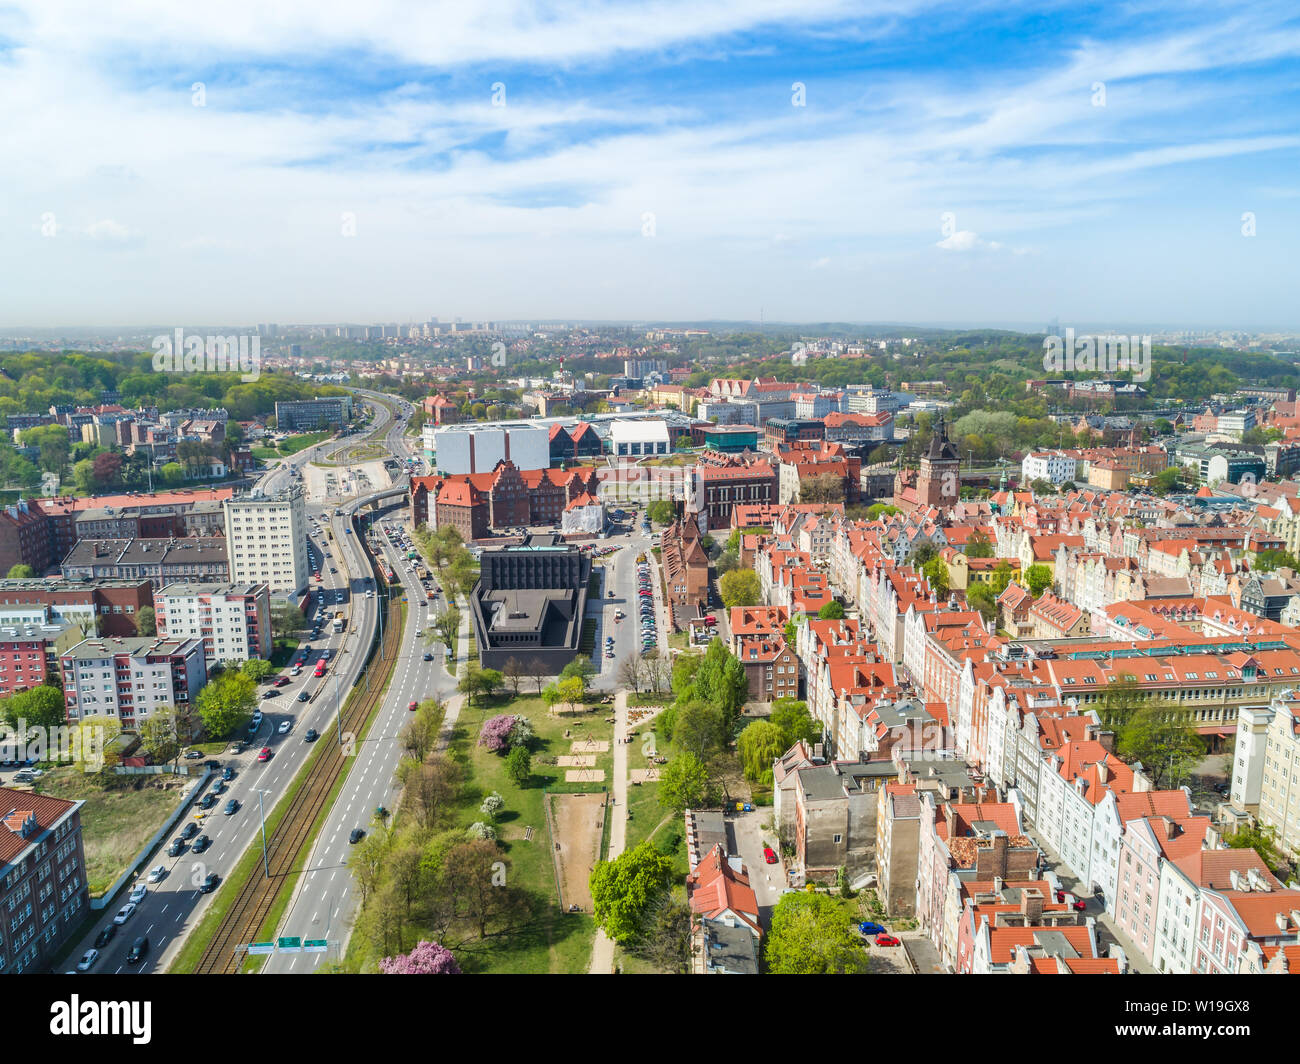 Gdańsk à partir d'une vue à vol d'oiseau. Un paysage de ville, avec une apparente théâtre shakespearien. Attractions touristiques et monuments historiques de la vieille ville. Banque D'Images